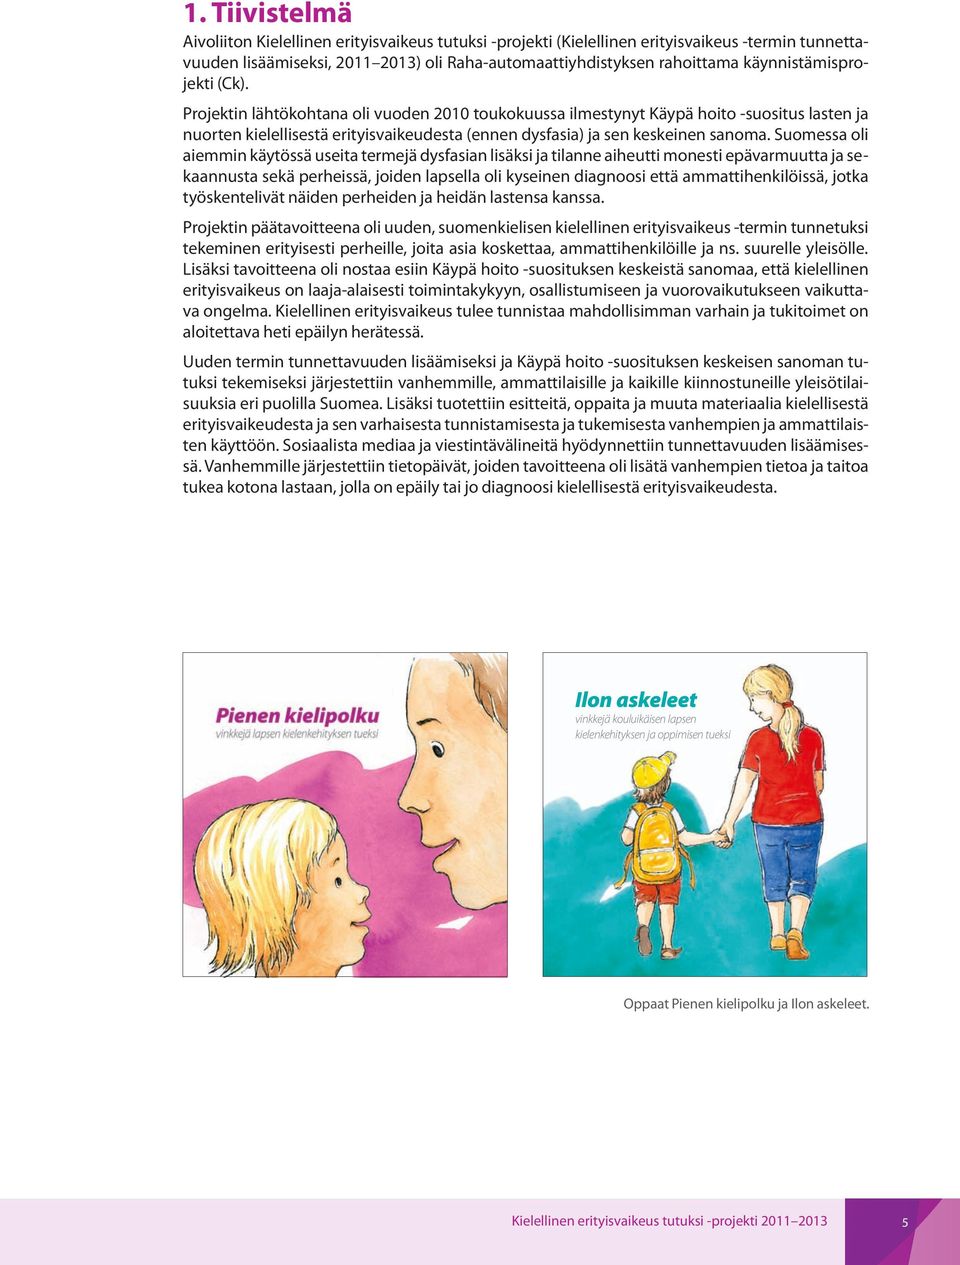 Projektin lähtökohtana oli vuoden 2010 toukokuussa ilmestynyt Käypä hoito -suositus lasten ja nuorten kielellisestä erityisvaikeudesta (ennen dysfasia) ja sen keskeinen sanoma.